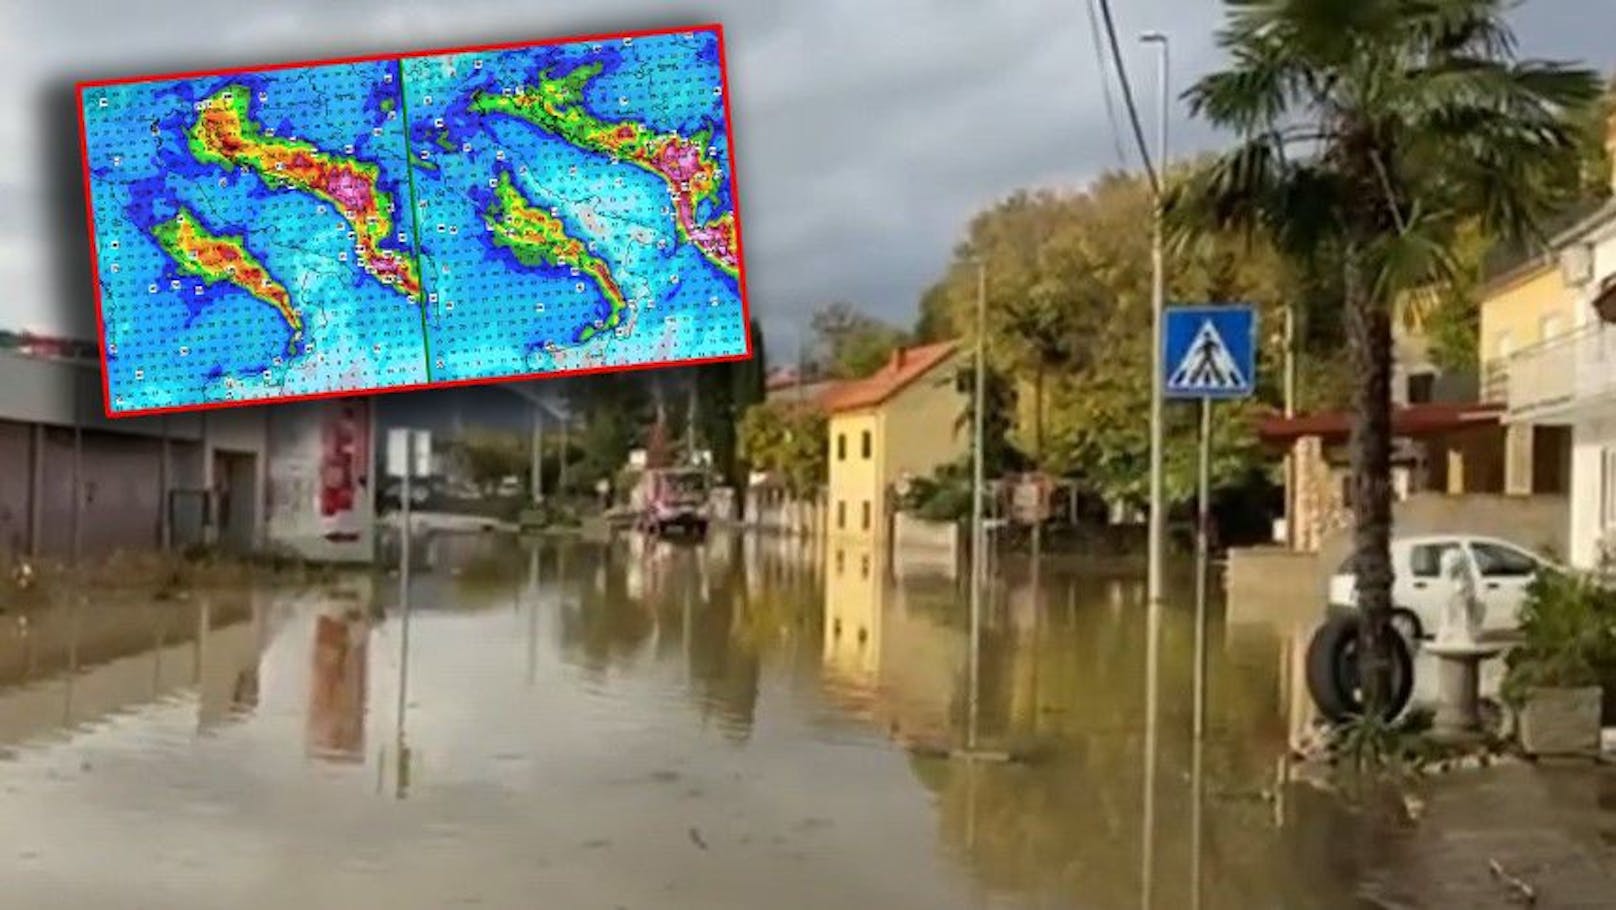 Land unter am Balkan – Sintflut steht erst bevor